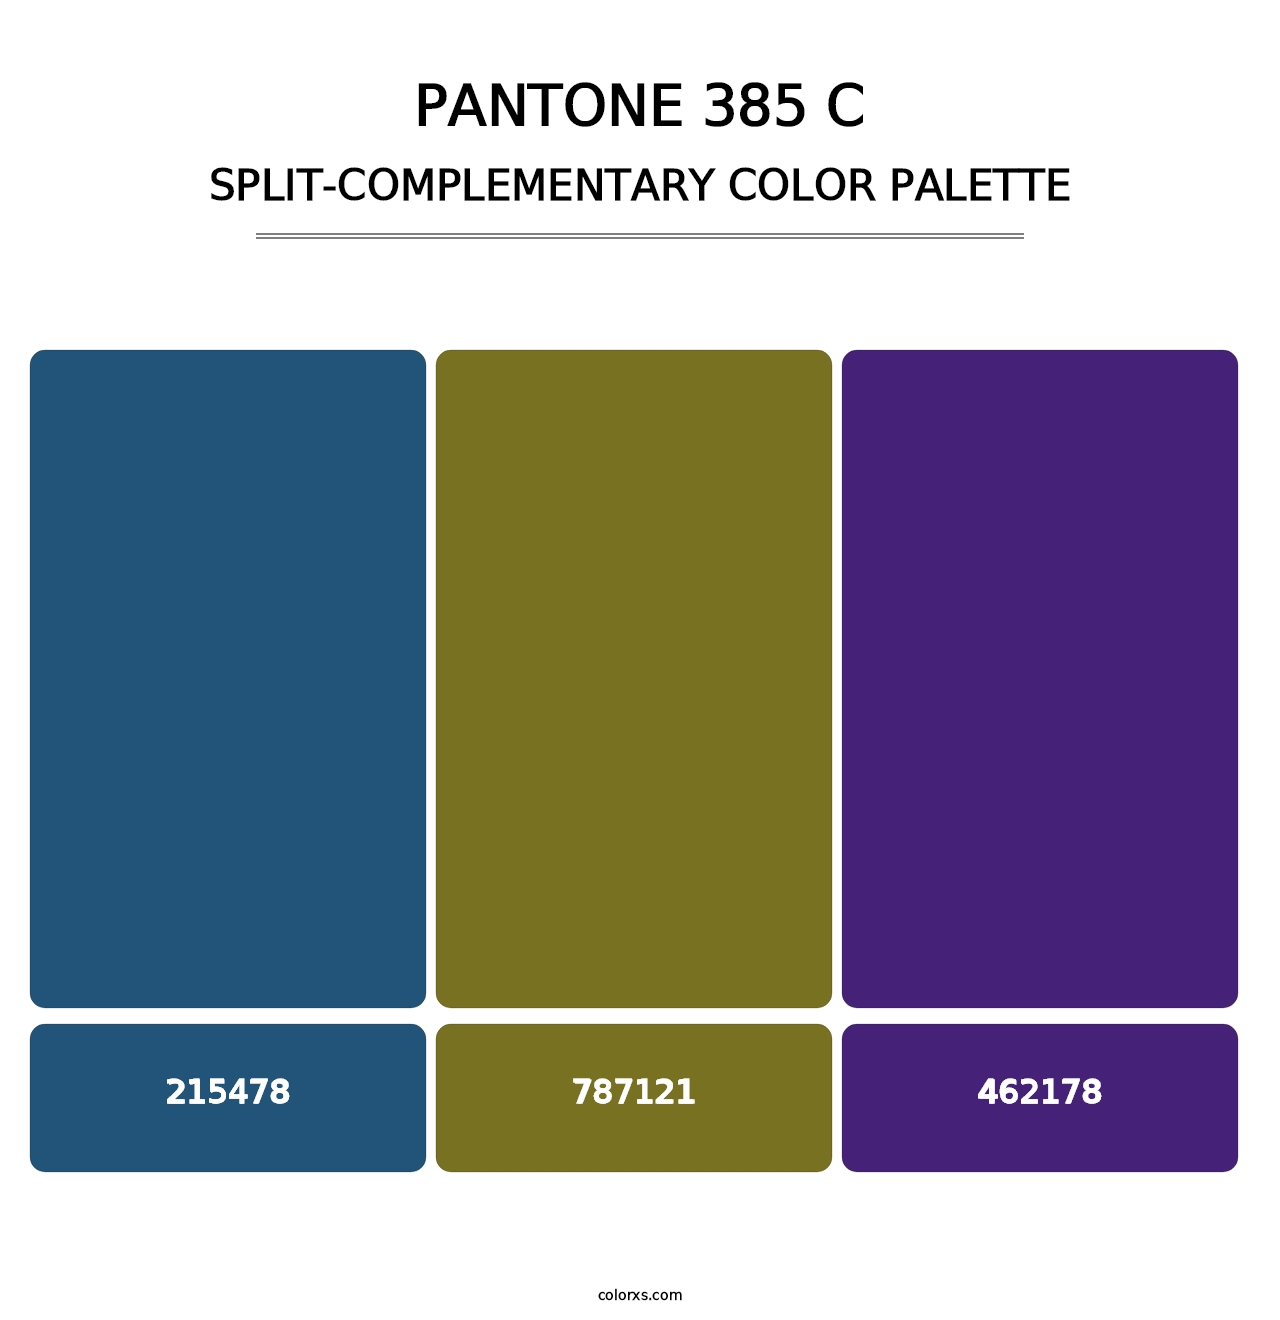 PANTONE 385 C - Split-Complementary Color Palette